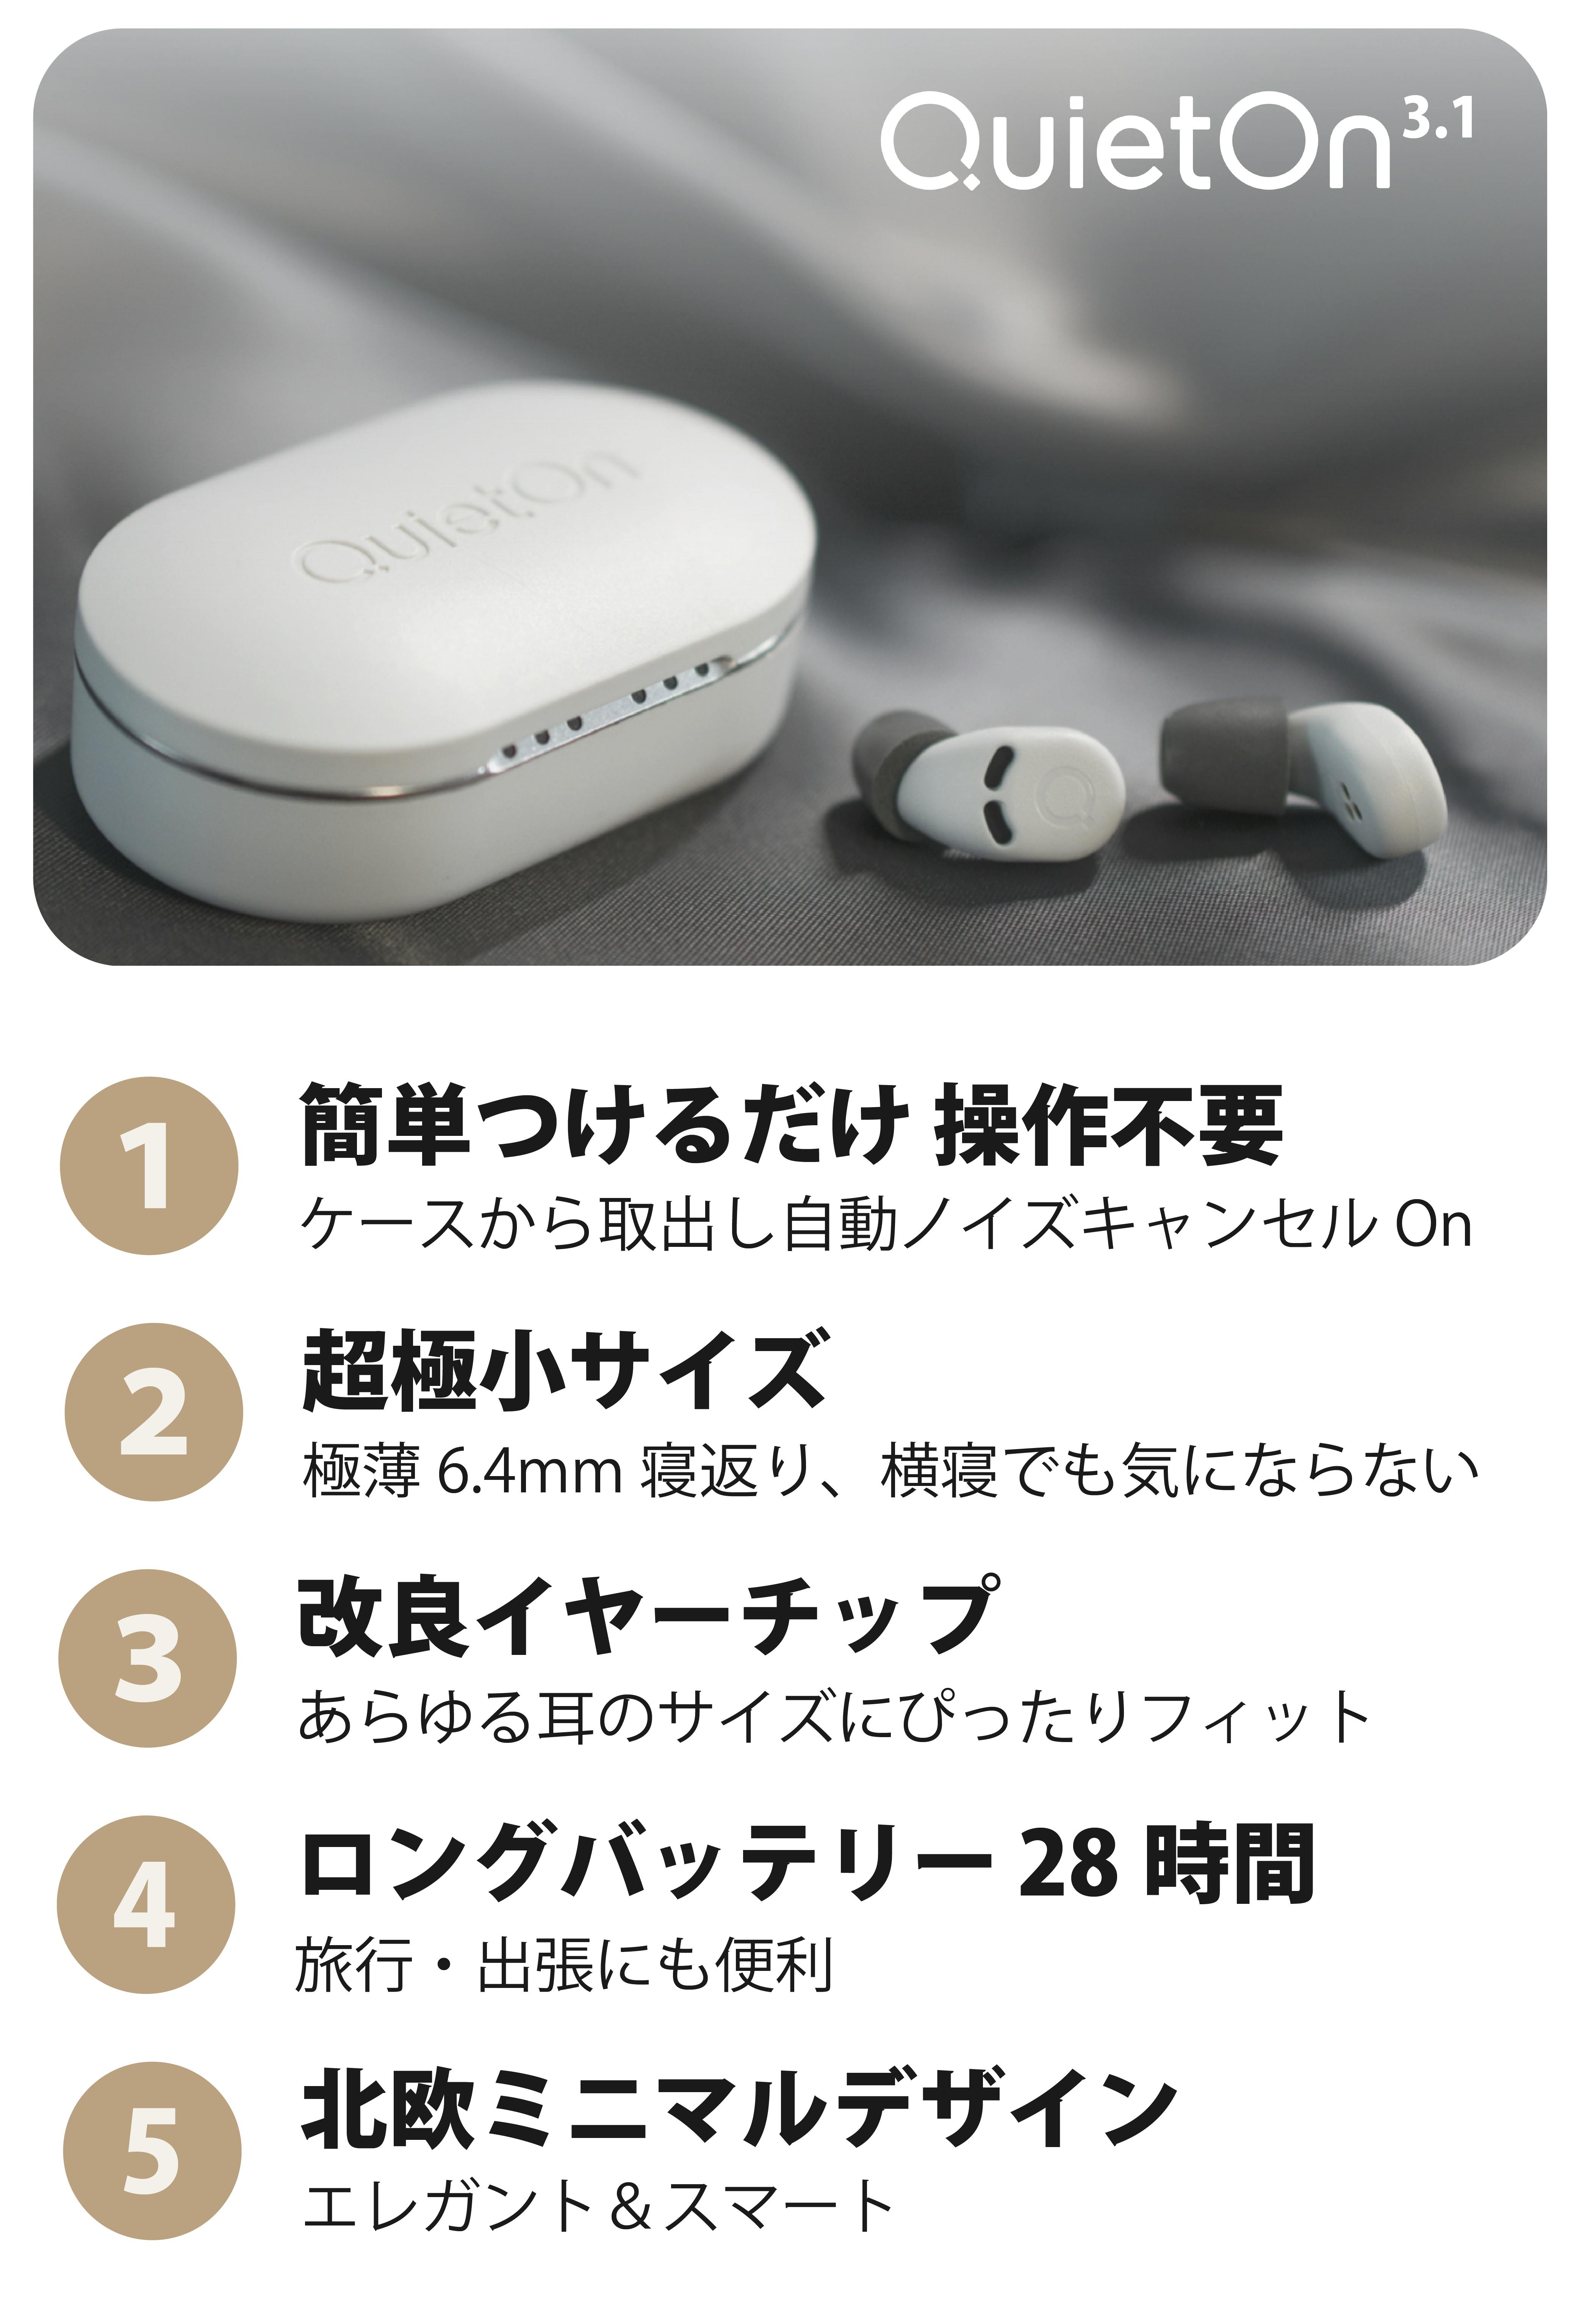 世界最小アクティブノイズキャンセル機能搭載デジタル耳栓「QuietOn 3.1